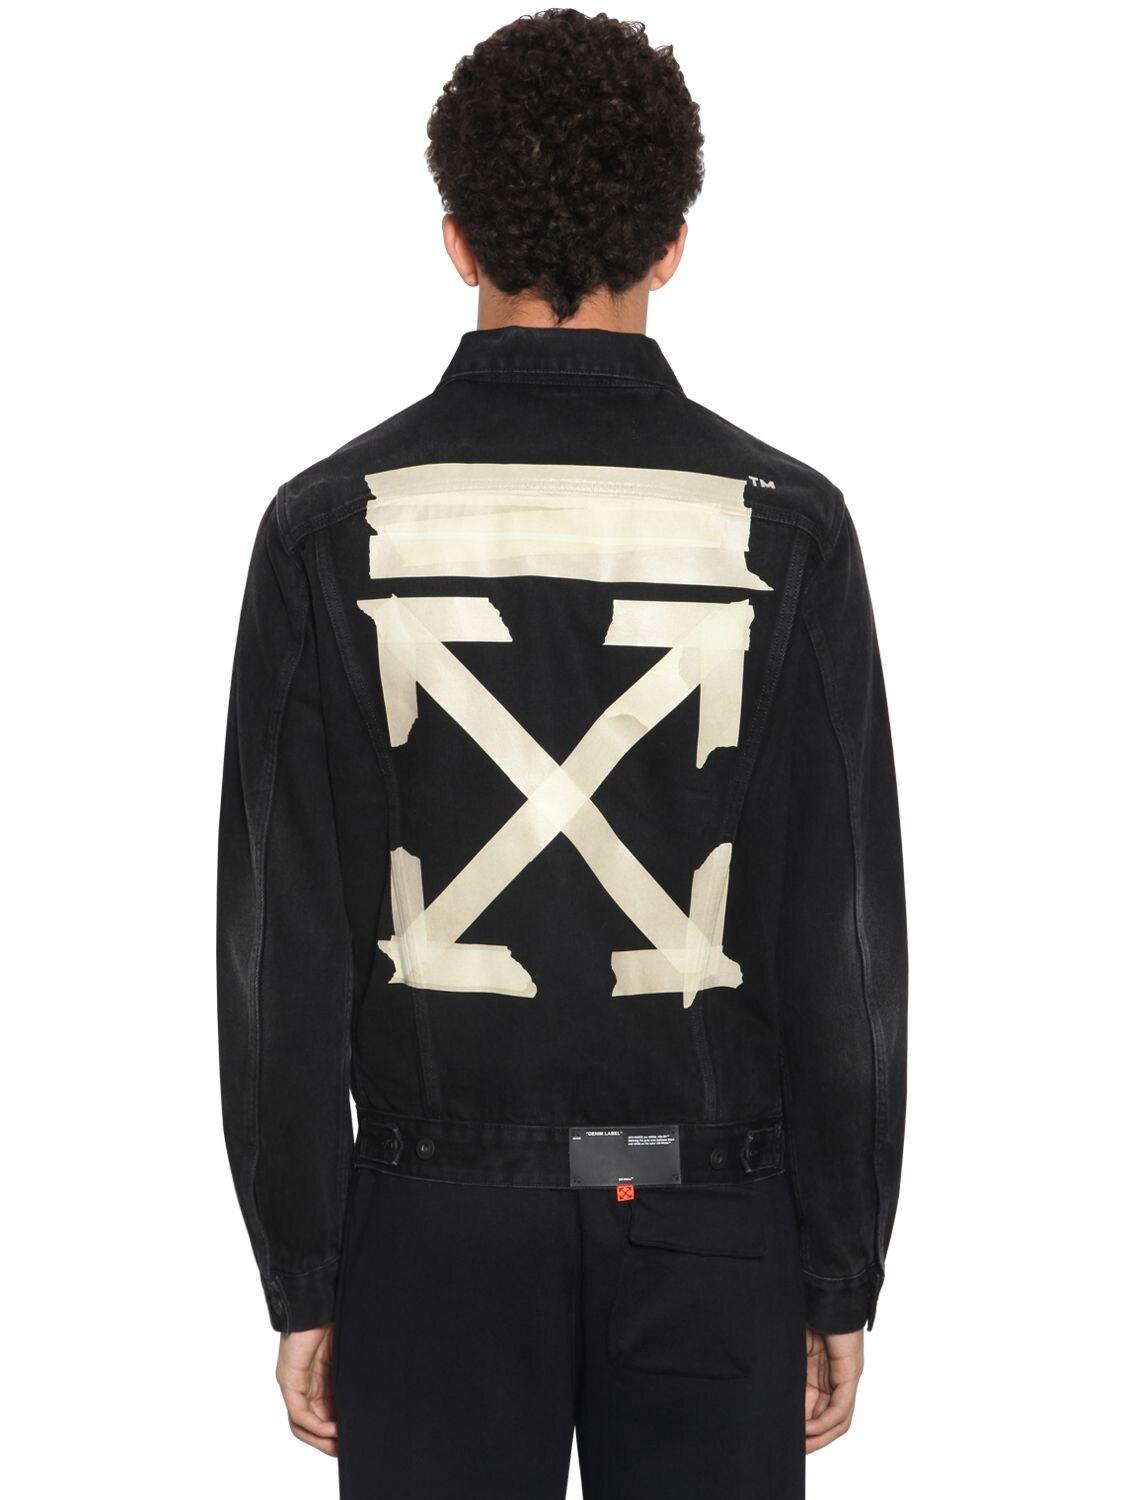 Axis Denim Jacket Large Rings Letter Tape Zipper Distressed Punkcore  Streetwear | eBay